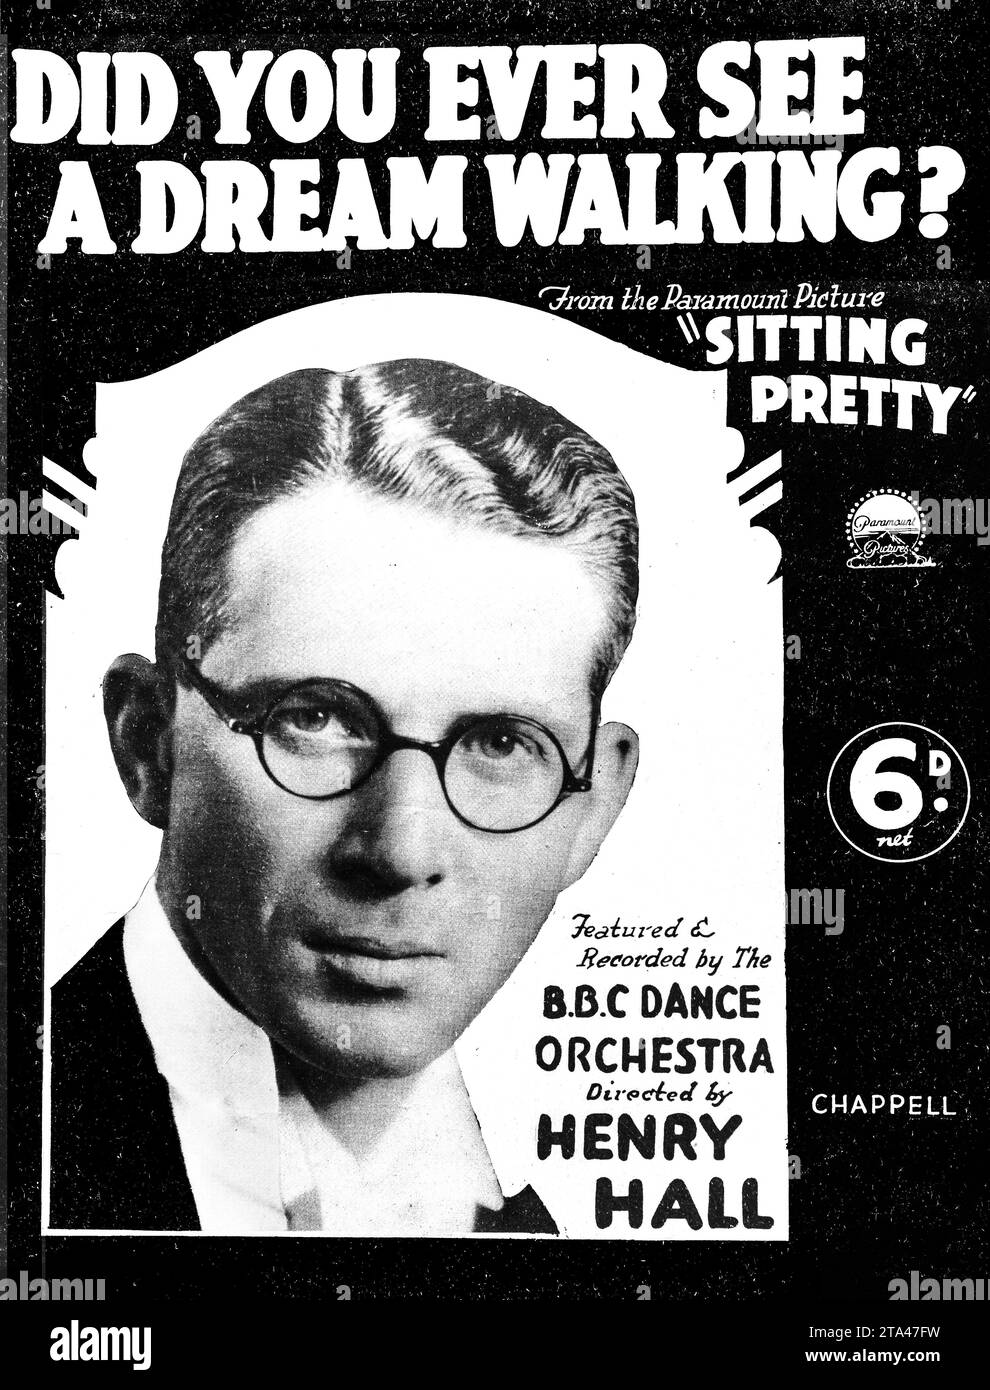 Partition cinématographique vintage - 'DID You Ever See A Dream Walking?'. Couverture de musique des années 1930 de The Paramount Picture 'sitting Pretty', mettant en vedette Henry Hall. Banque D'Images